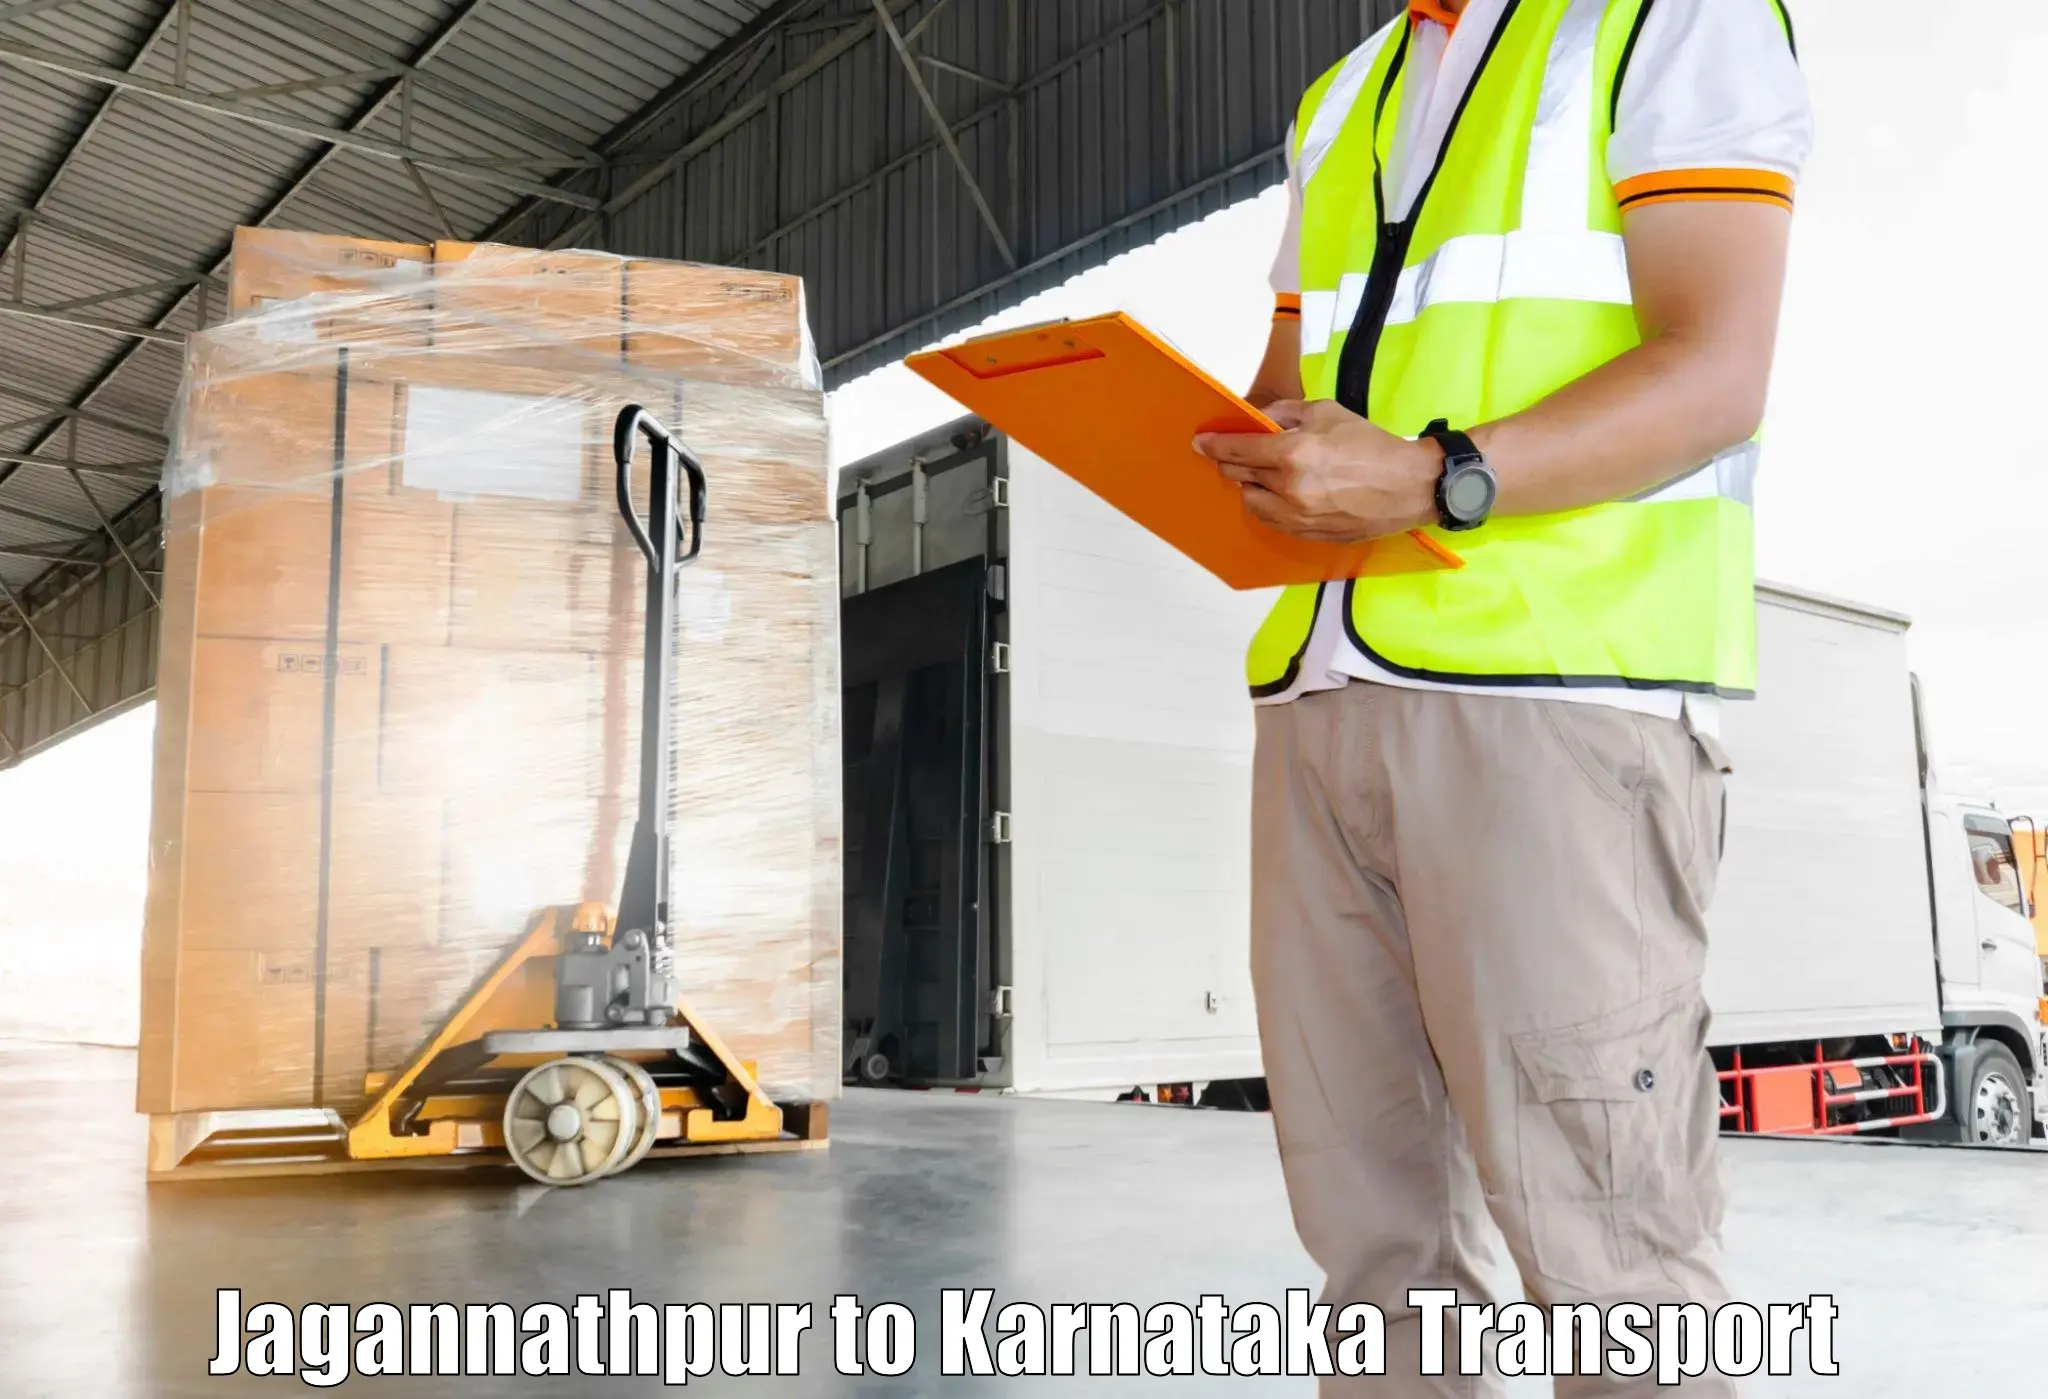 Shipping partner Jagannathpur to Karnataka